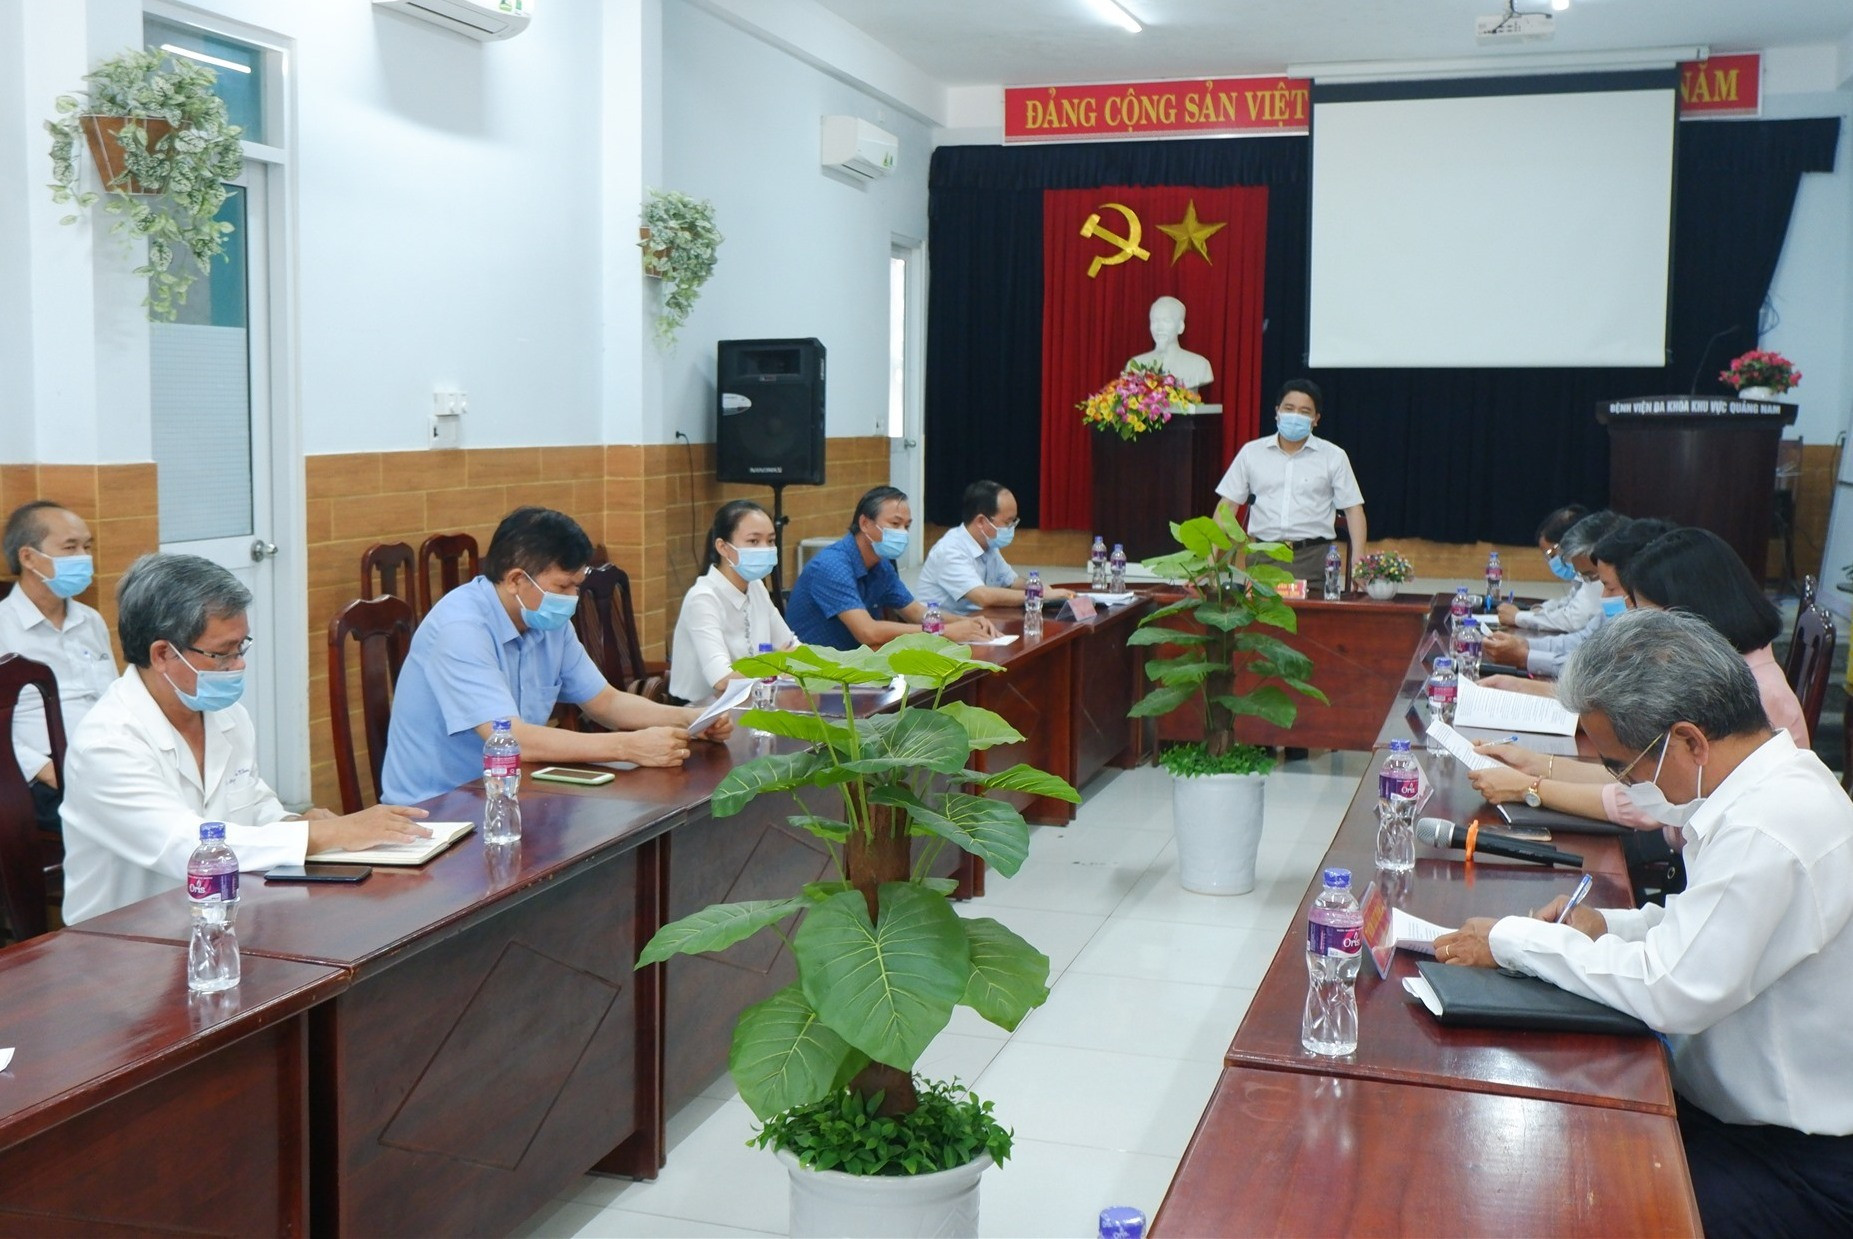 Phó Chủ tịch UBND tỉnh Trần Văn Tân chủ trì buổi làm việc cùng BV Đa khoa Khu vực Quảng Nam. Ảnh: X.H